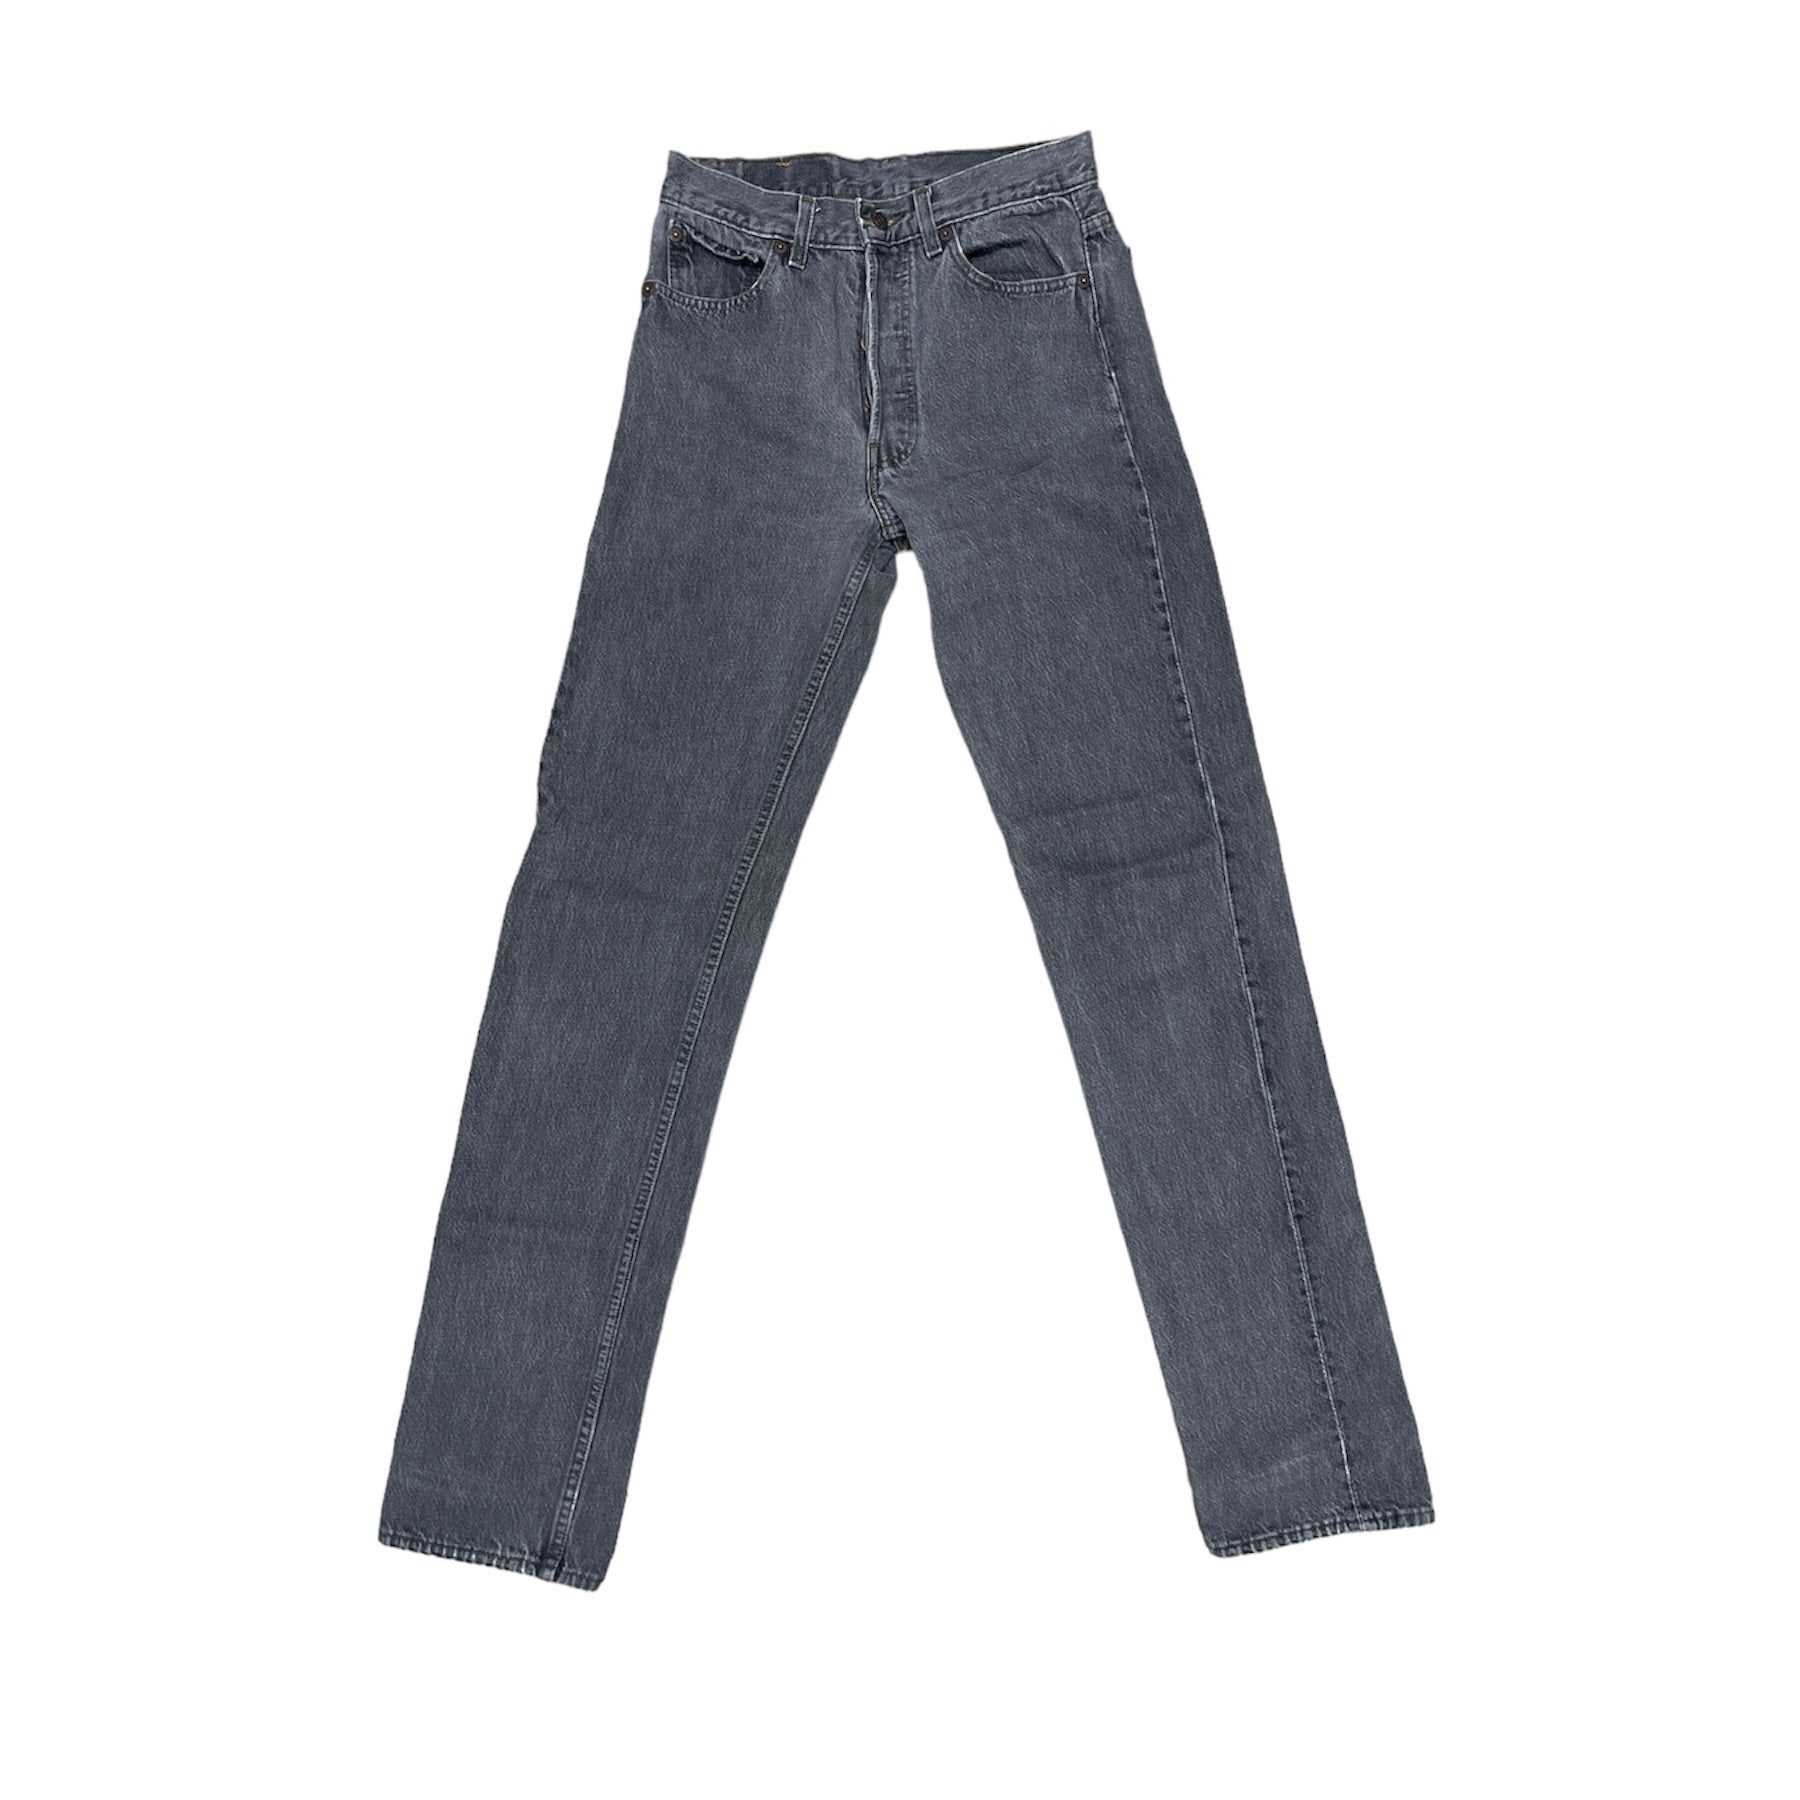 Vintage Levis 501 Grey Jeans (W28/L36)